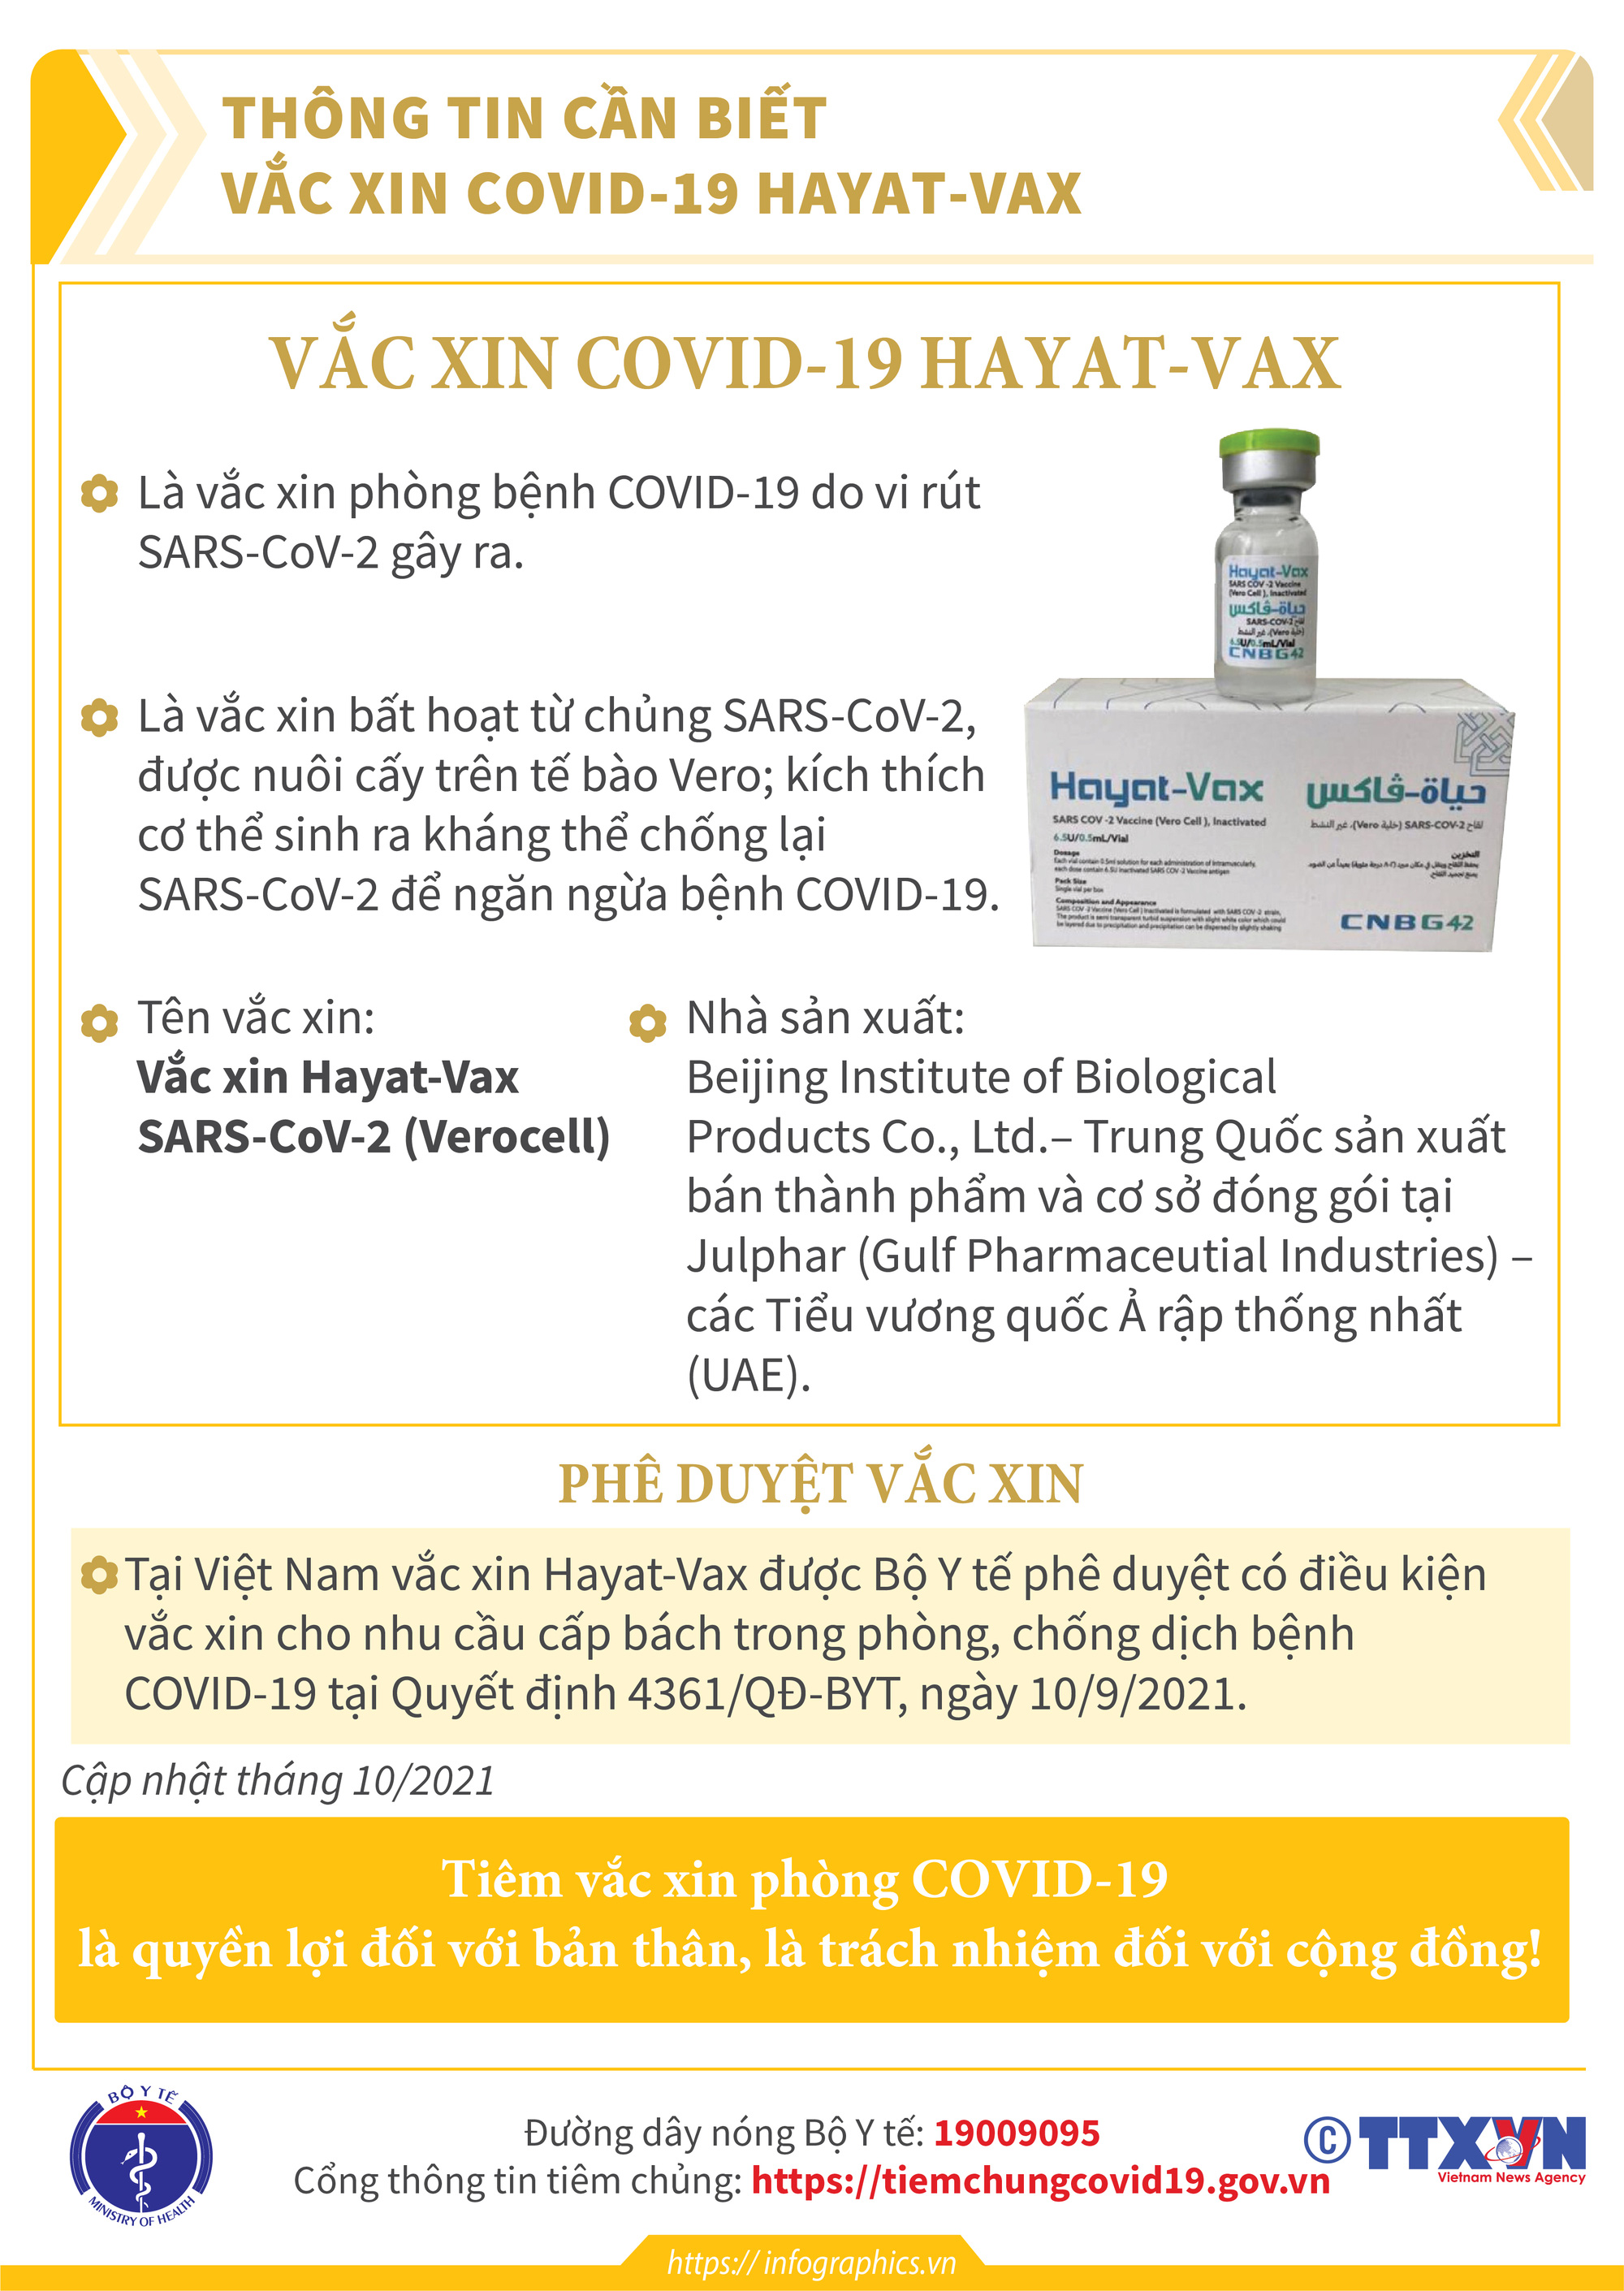 [Infographic] Thông tin cần biết về 03 loại vaccine phòng COVID-19: Vaccine Hayat-Vax, vaccine Verocell, vaccine Abdala  - Ảnh 1.